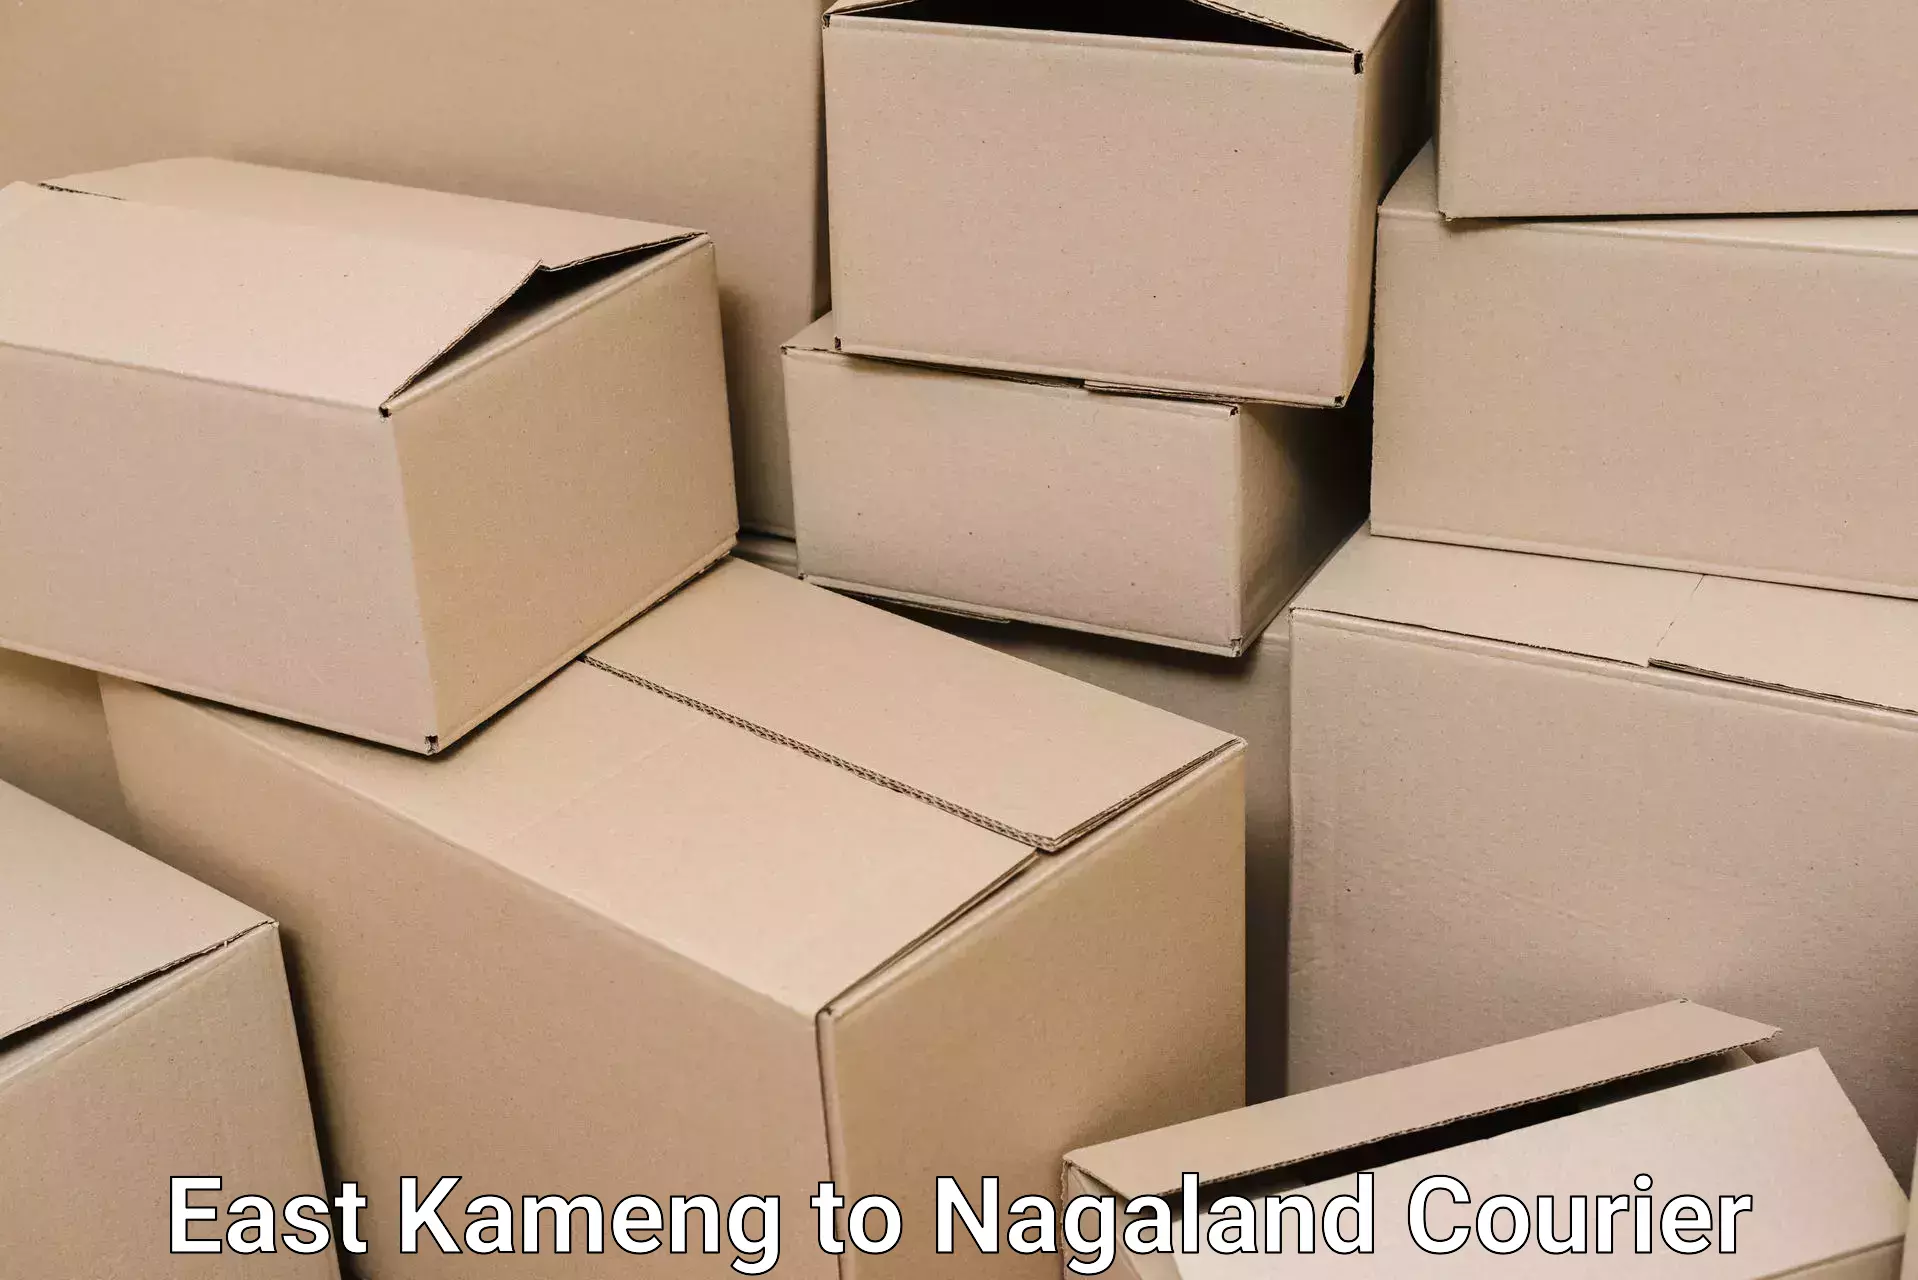 Dependable furniture transport East Kameng to Nagaland